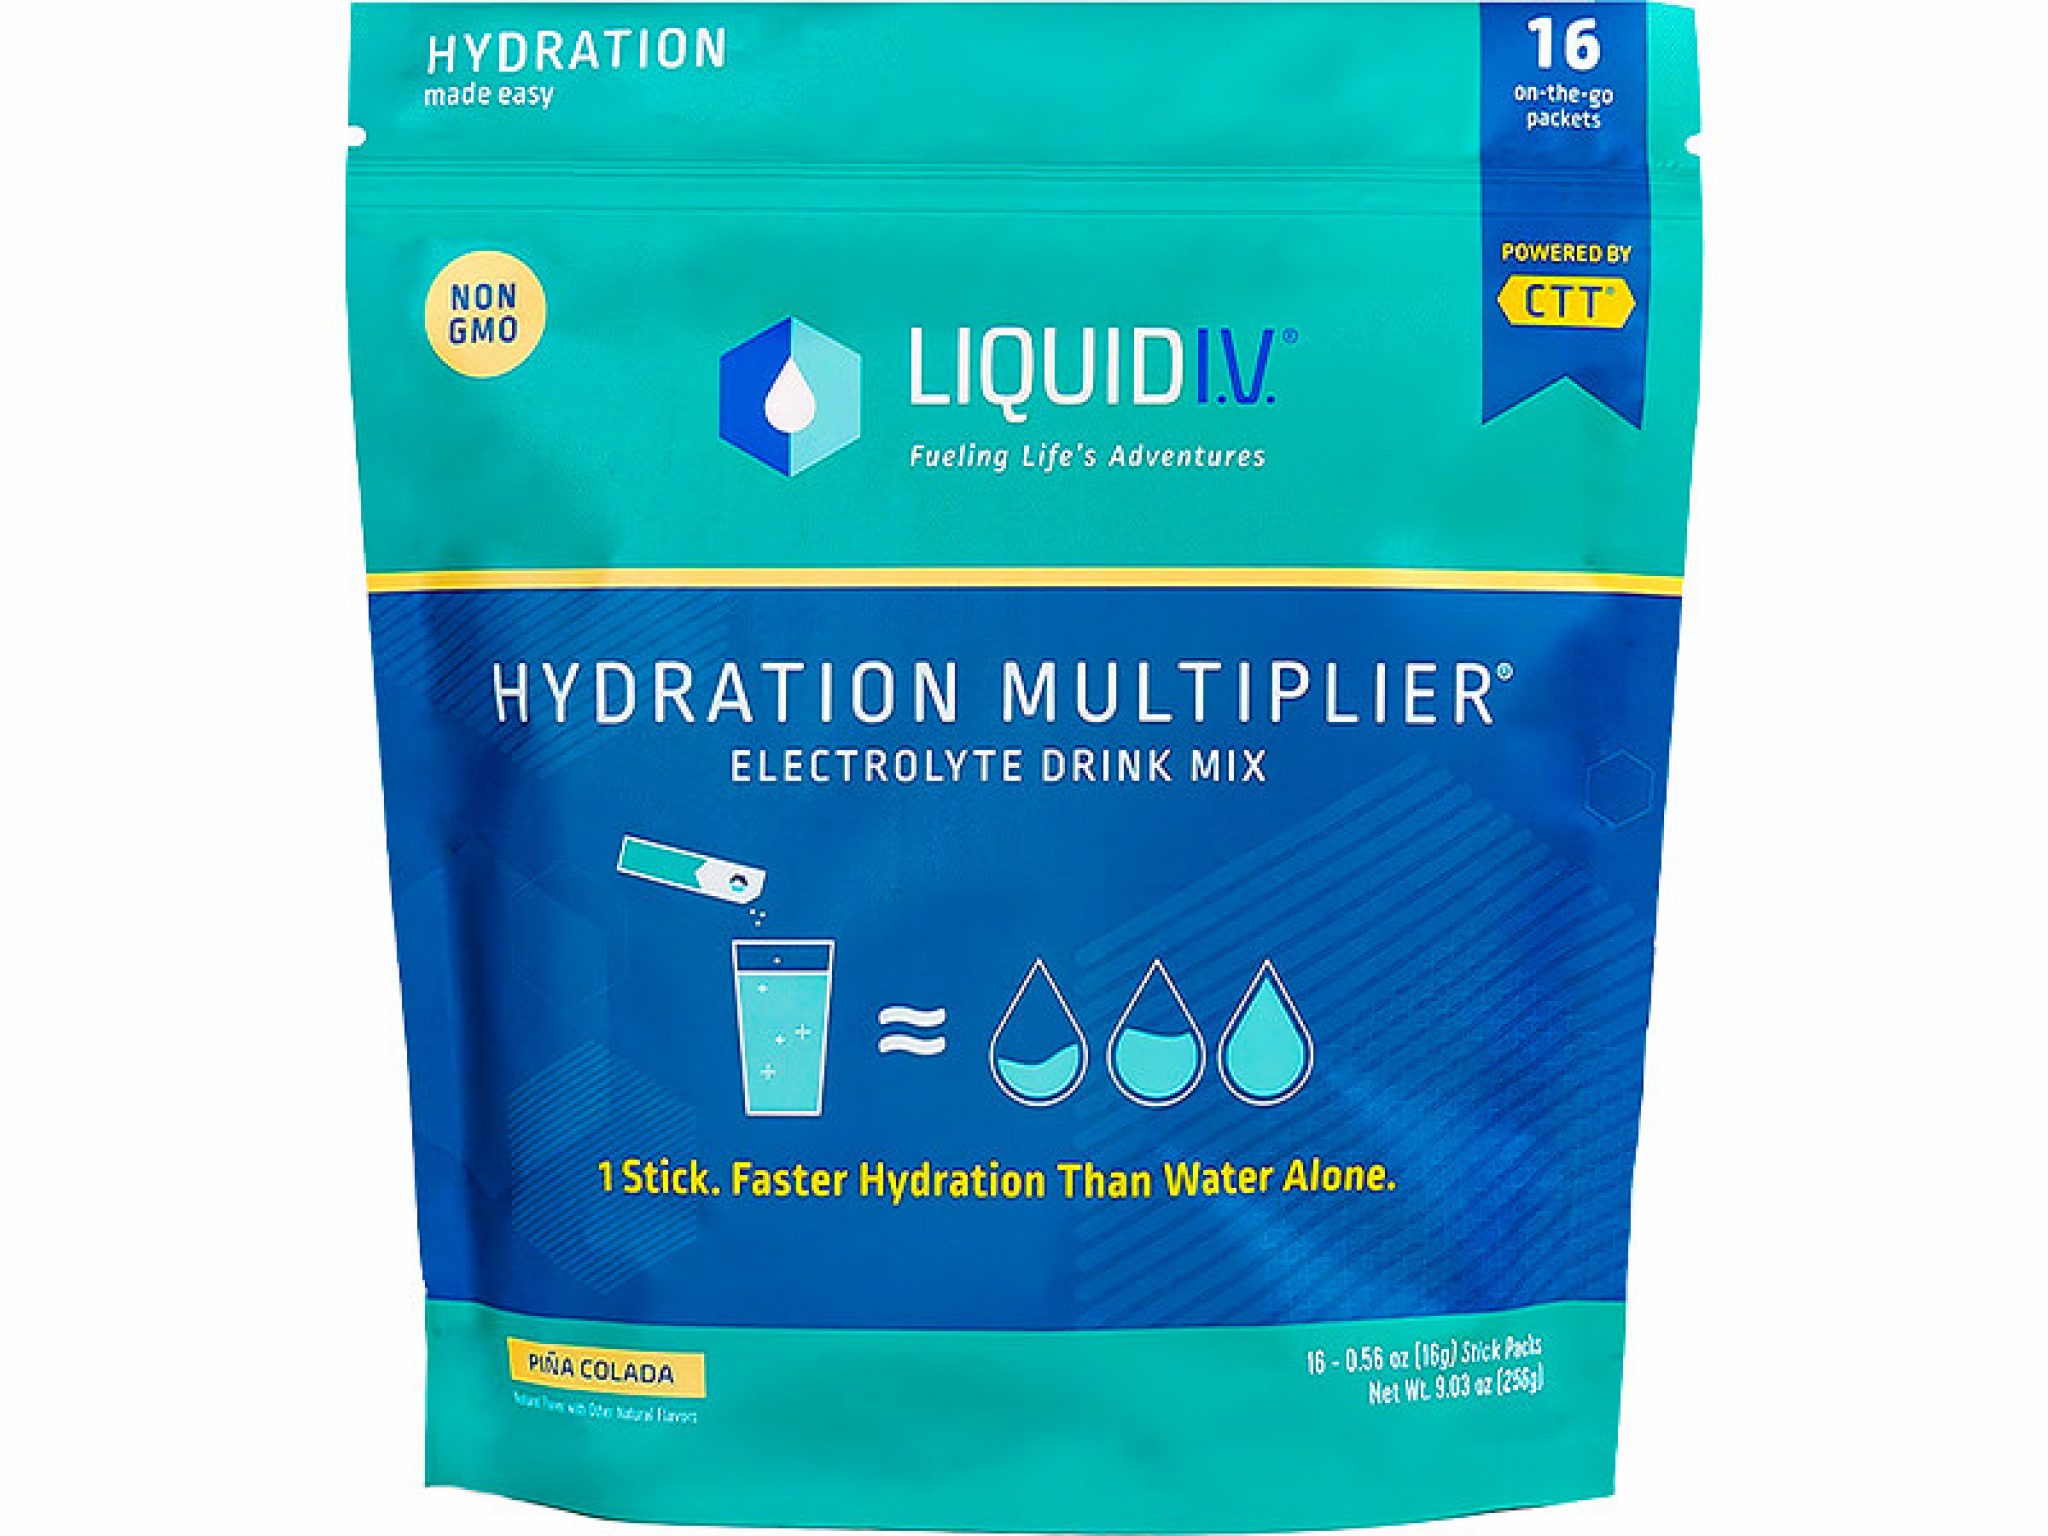 liquid iv hydration multiplier reviews